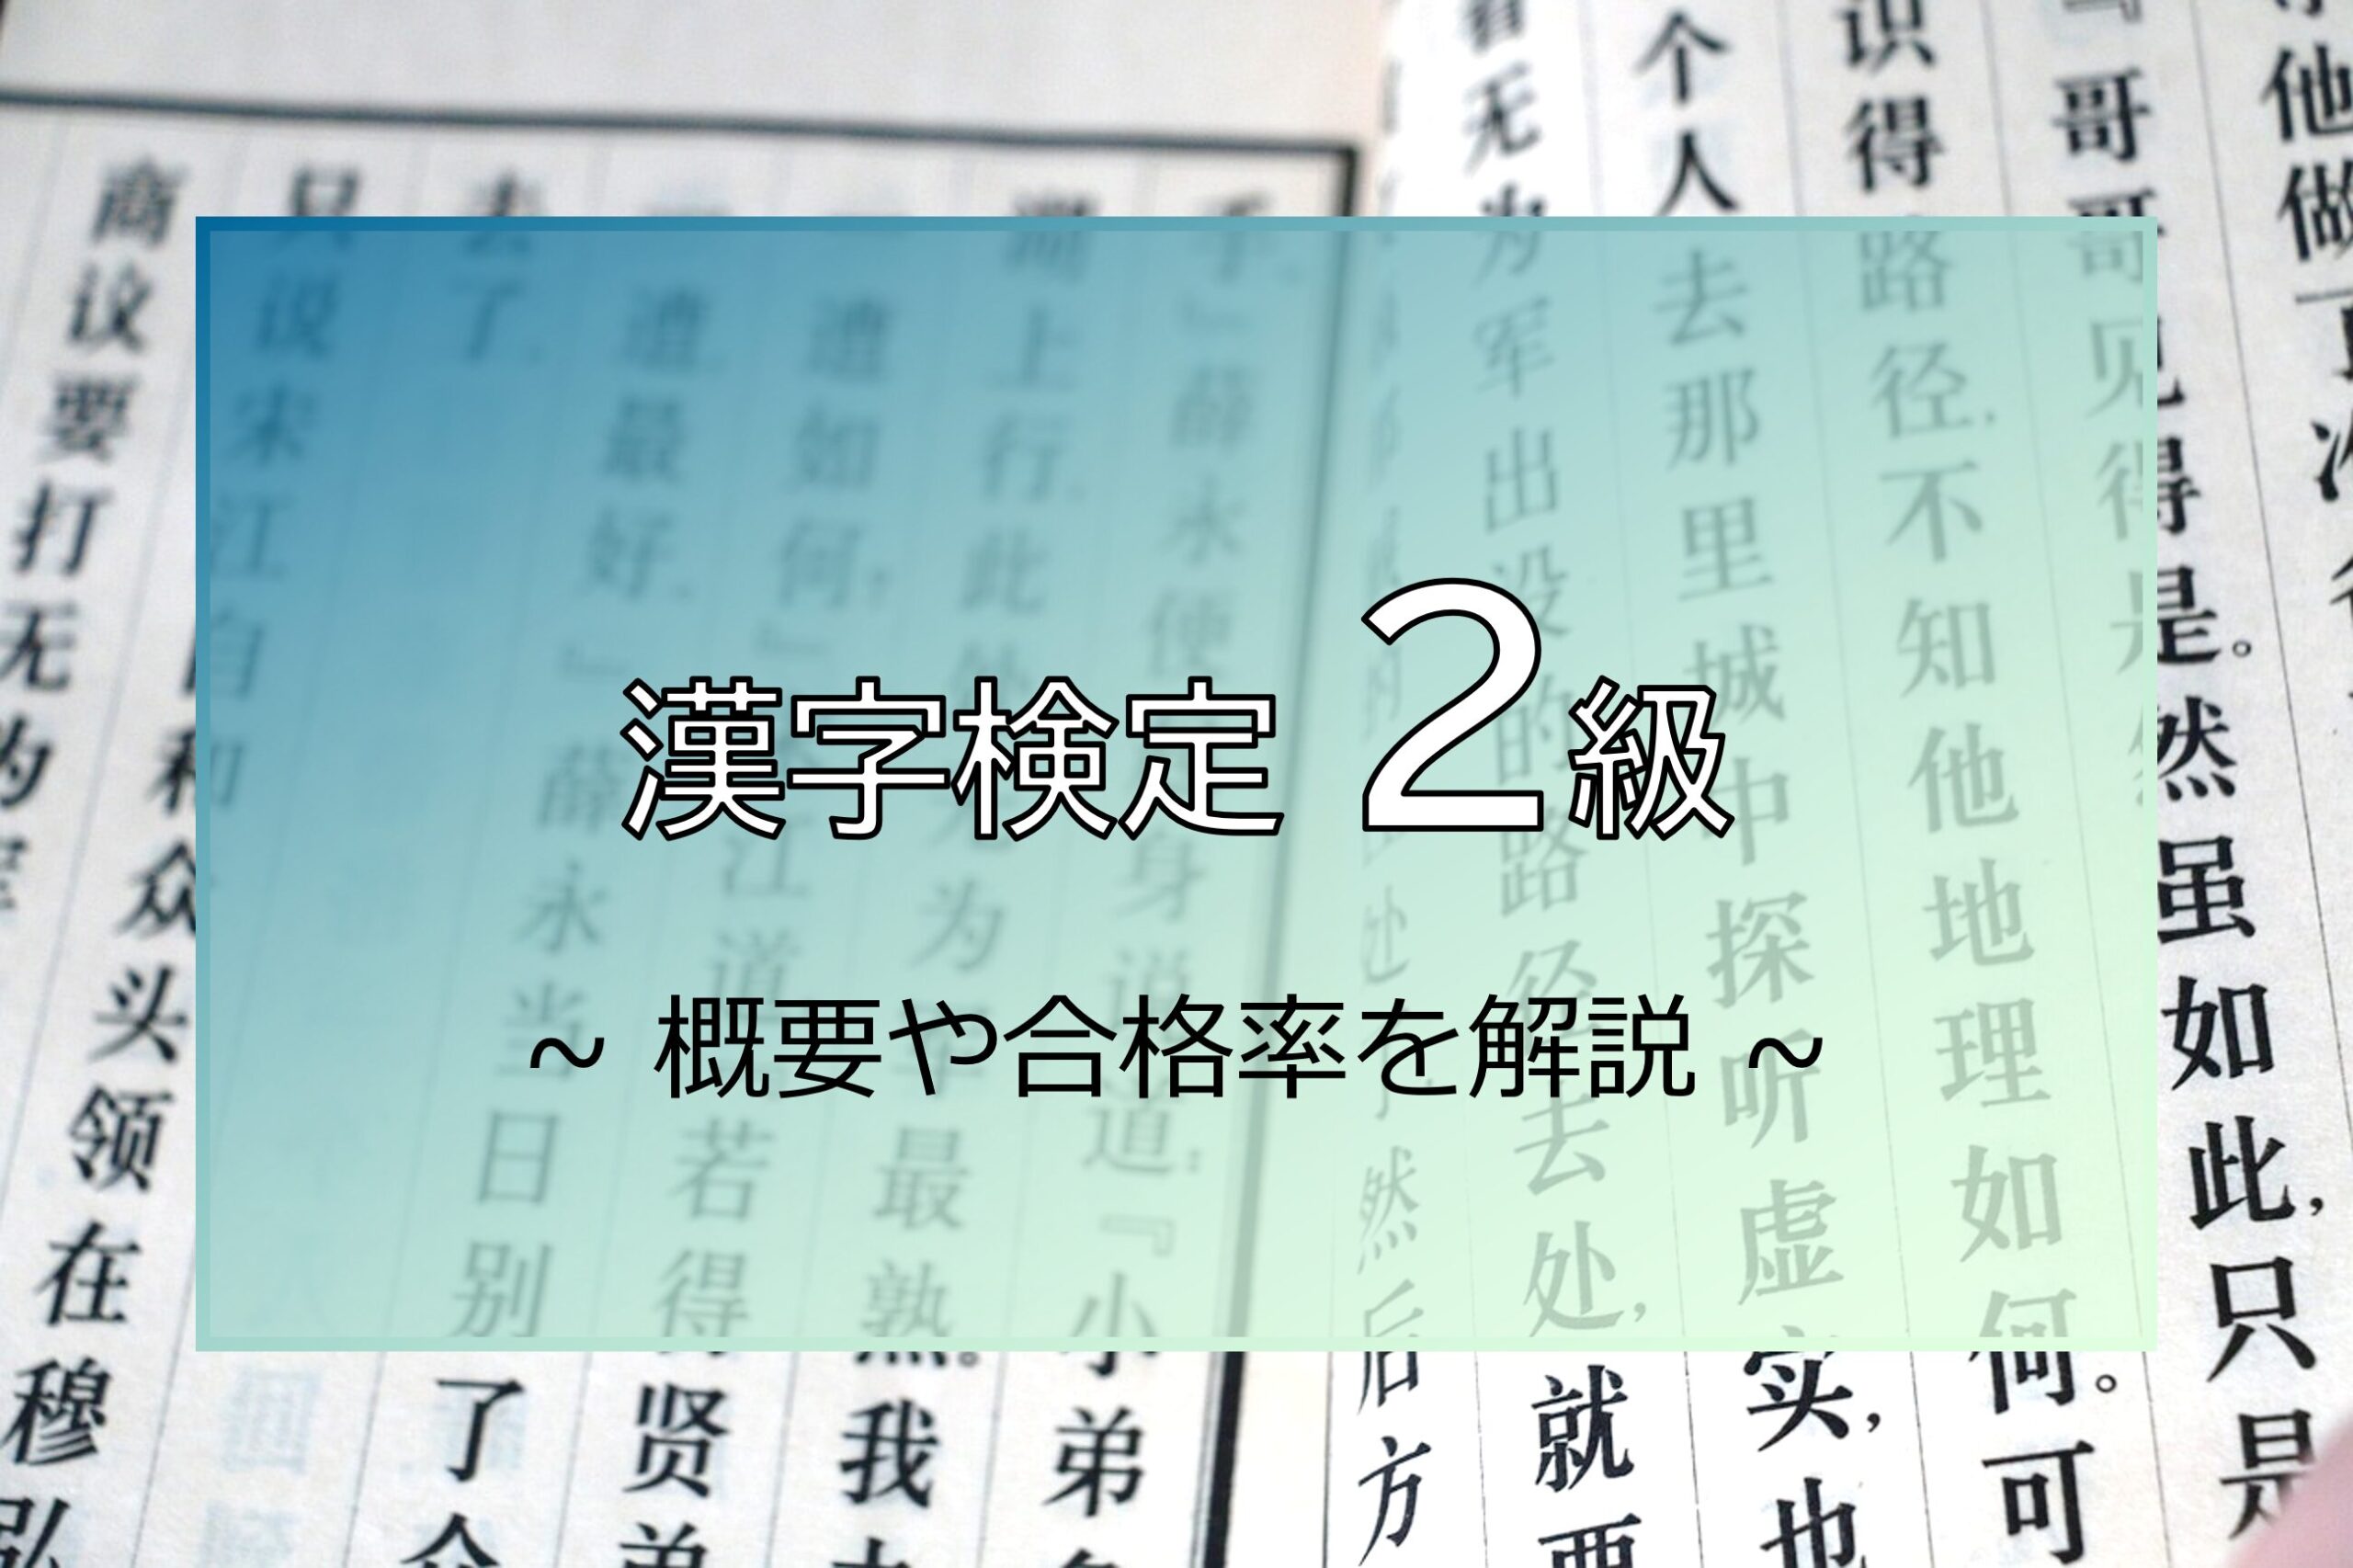 漢字検定2級の解説を行うことを示すアイキャッチ画像